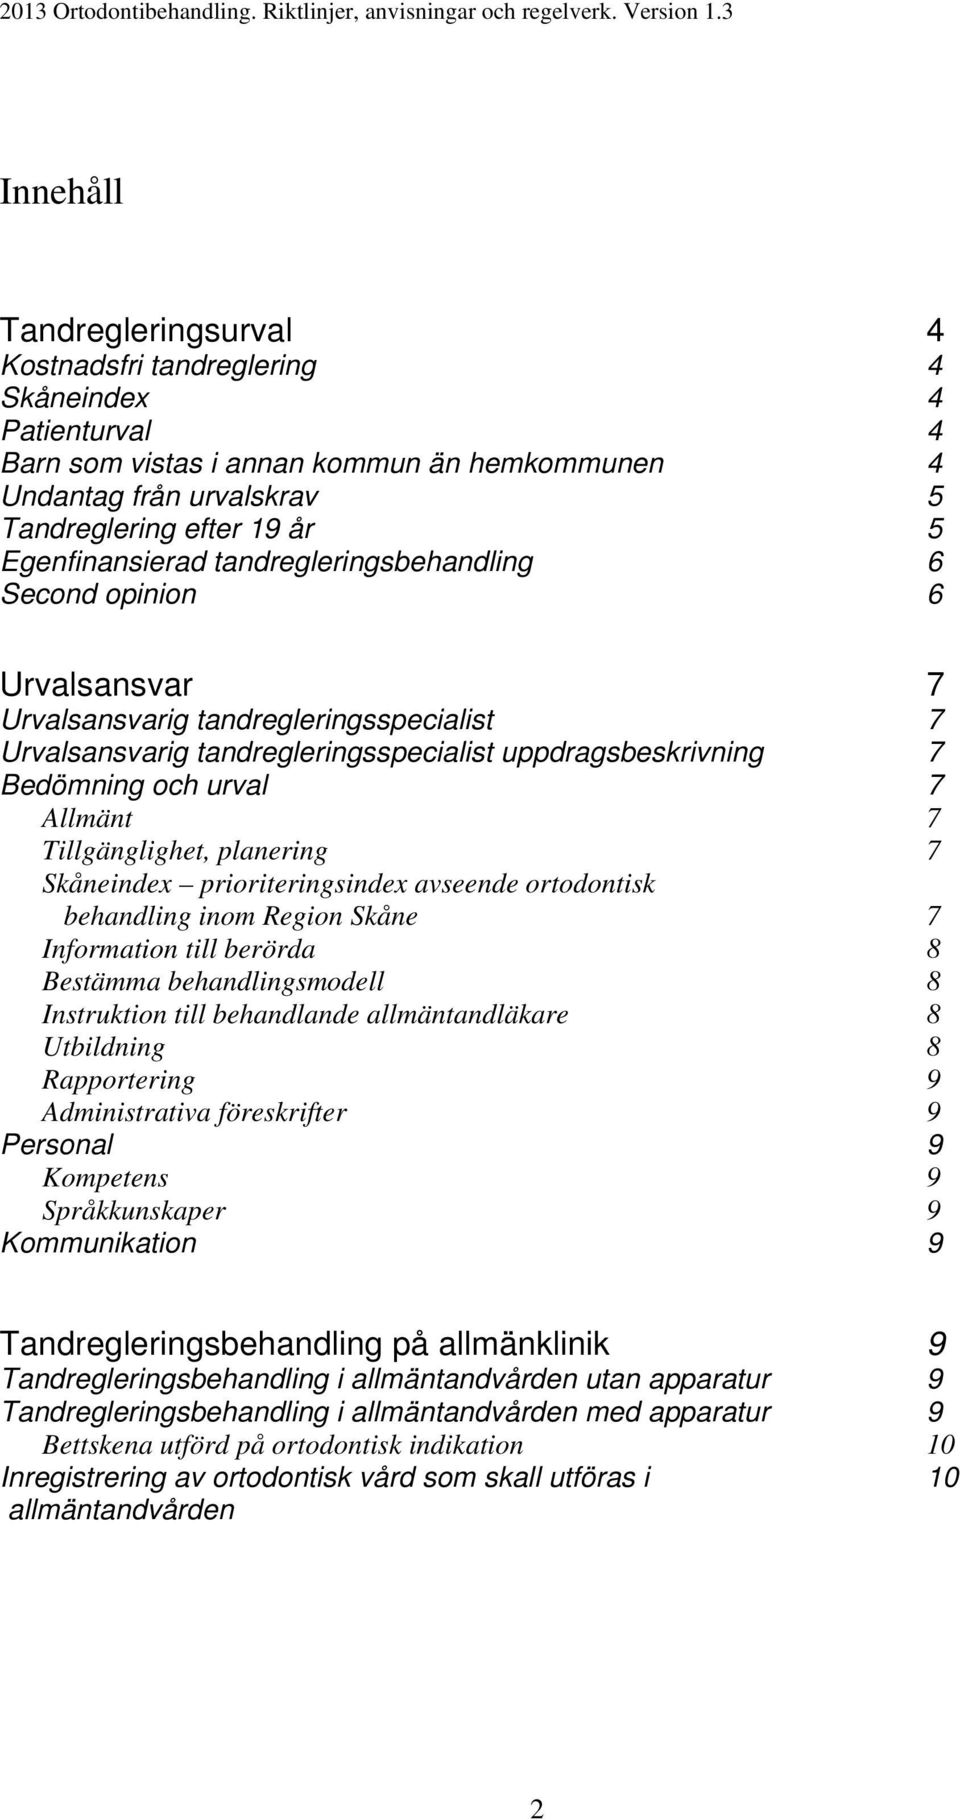 7 Allmänt 7 Tillgänglighet, planering 7 Skåneindex prioriteringsindex avseende ortodontisk behandling inom Region Skåne 7 Information till berörda 8 Bestämma behandlingsmodell 8 Instruktion till